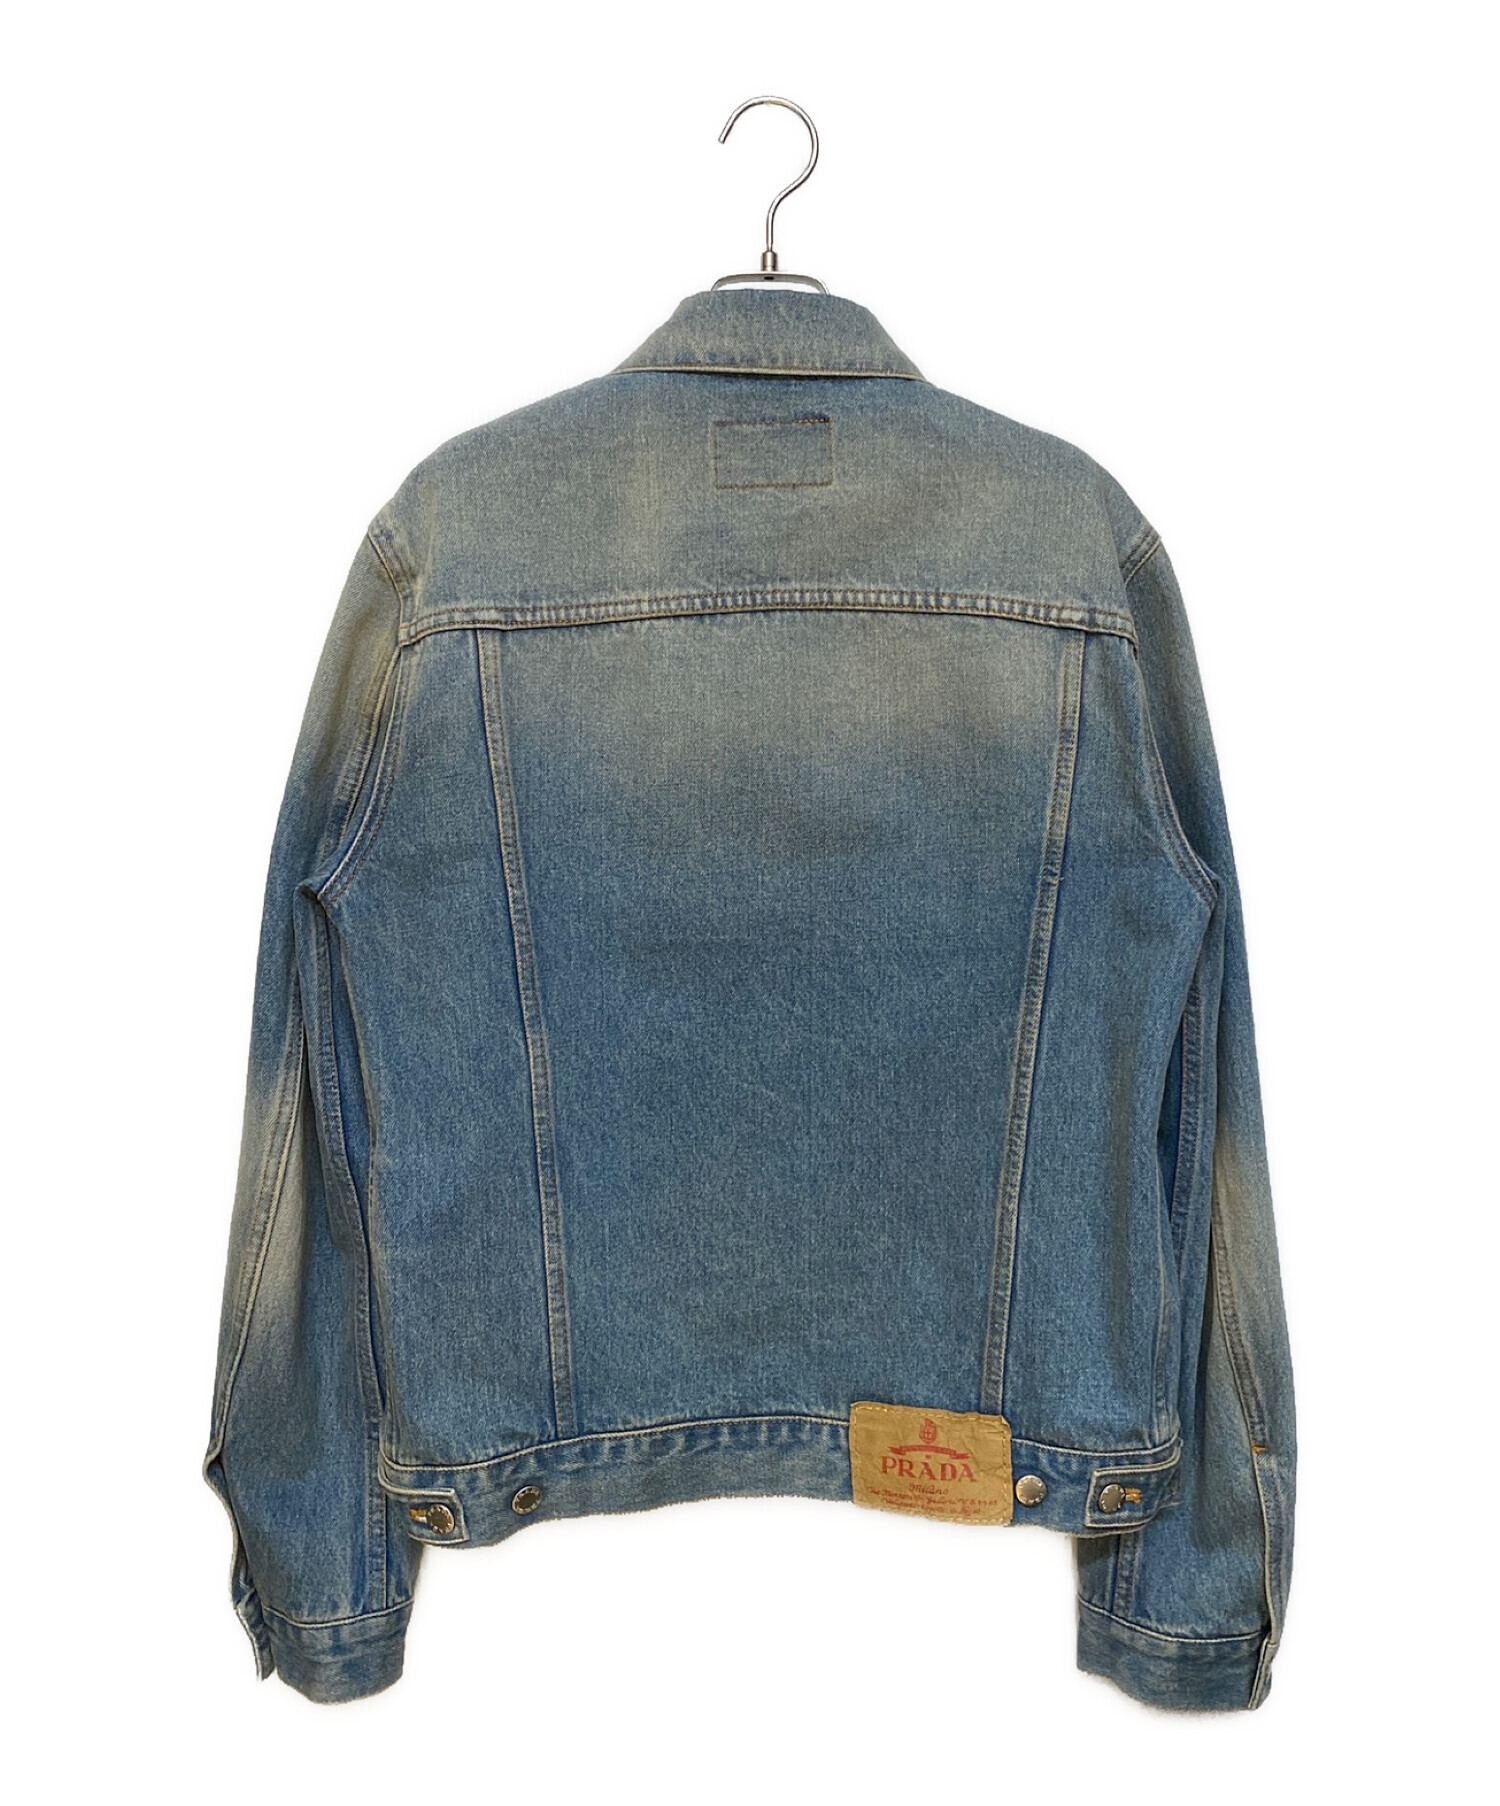 素材美品 JW アンダーソン デニム マルチ ポケット ジャケット アパレル 服 羽織 上着 46 Mサイズ 相当 ブランド メンズ TTT 0912-T70